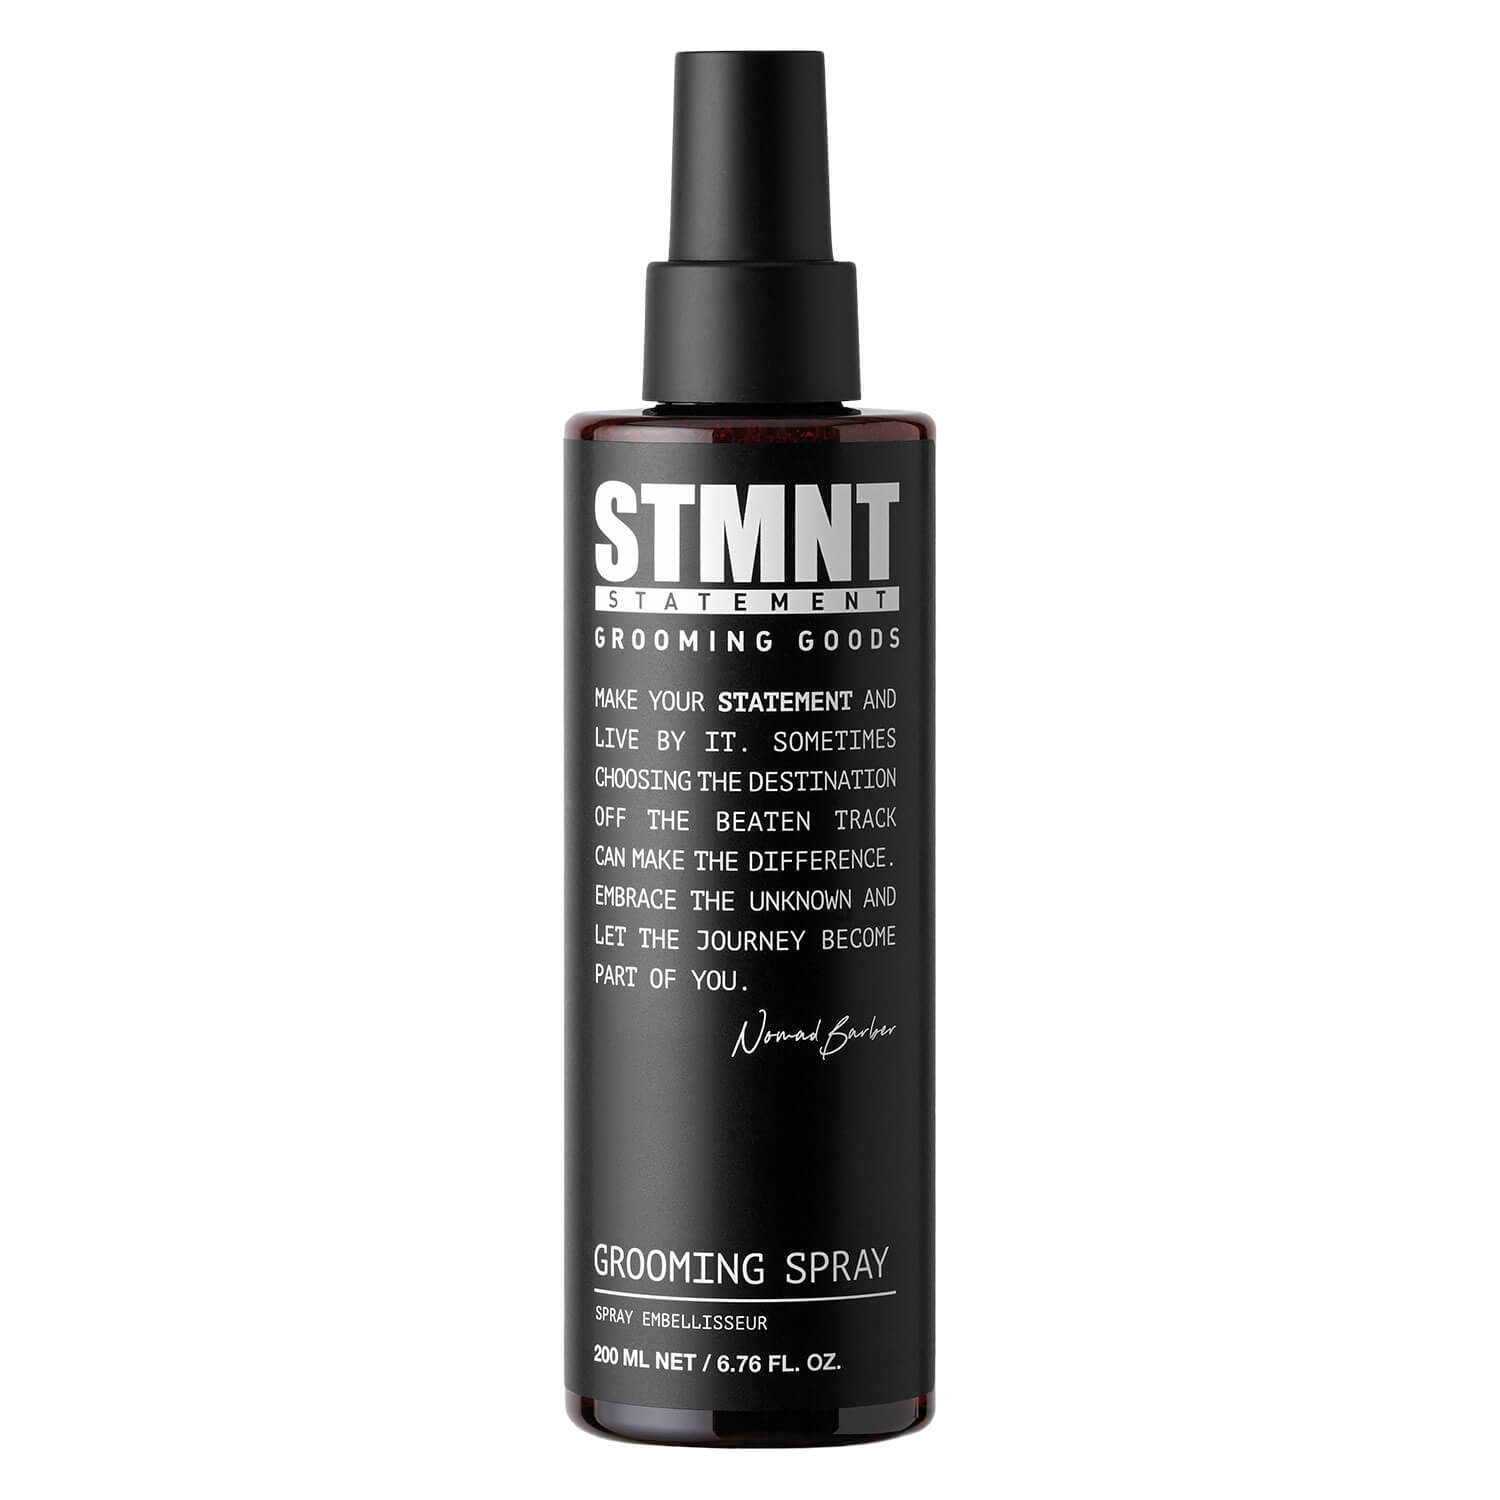 Produktbild von STMNT - Grooming Spray